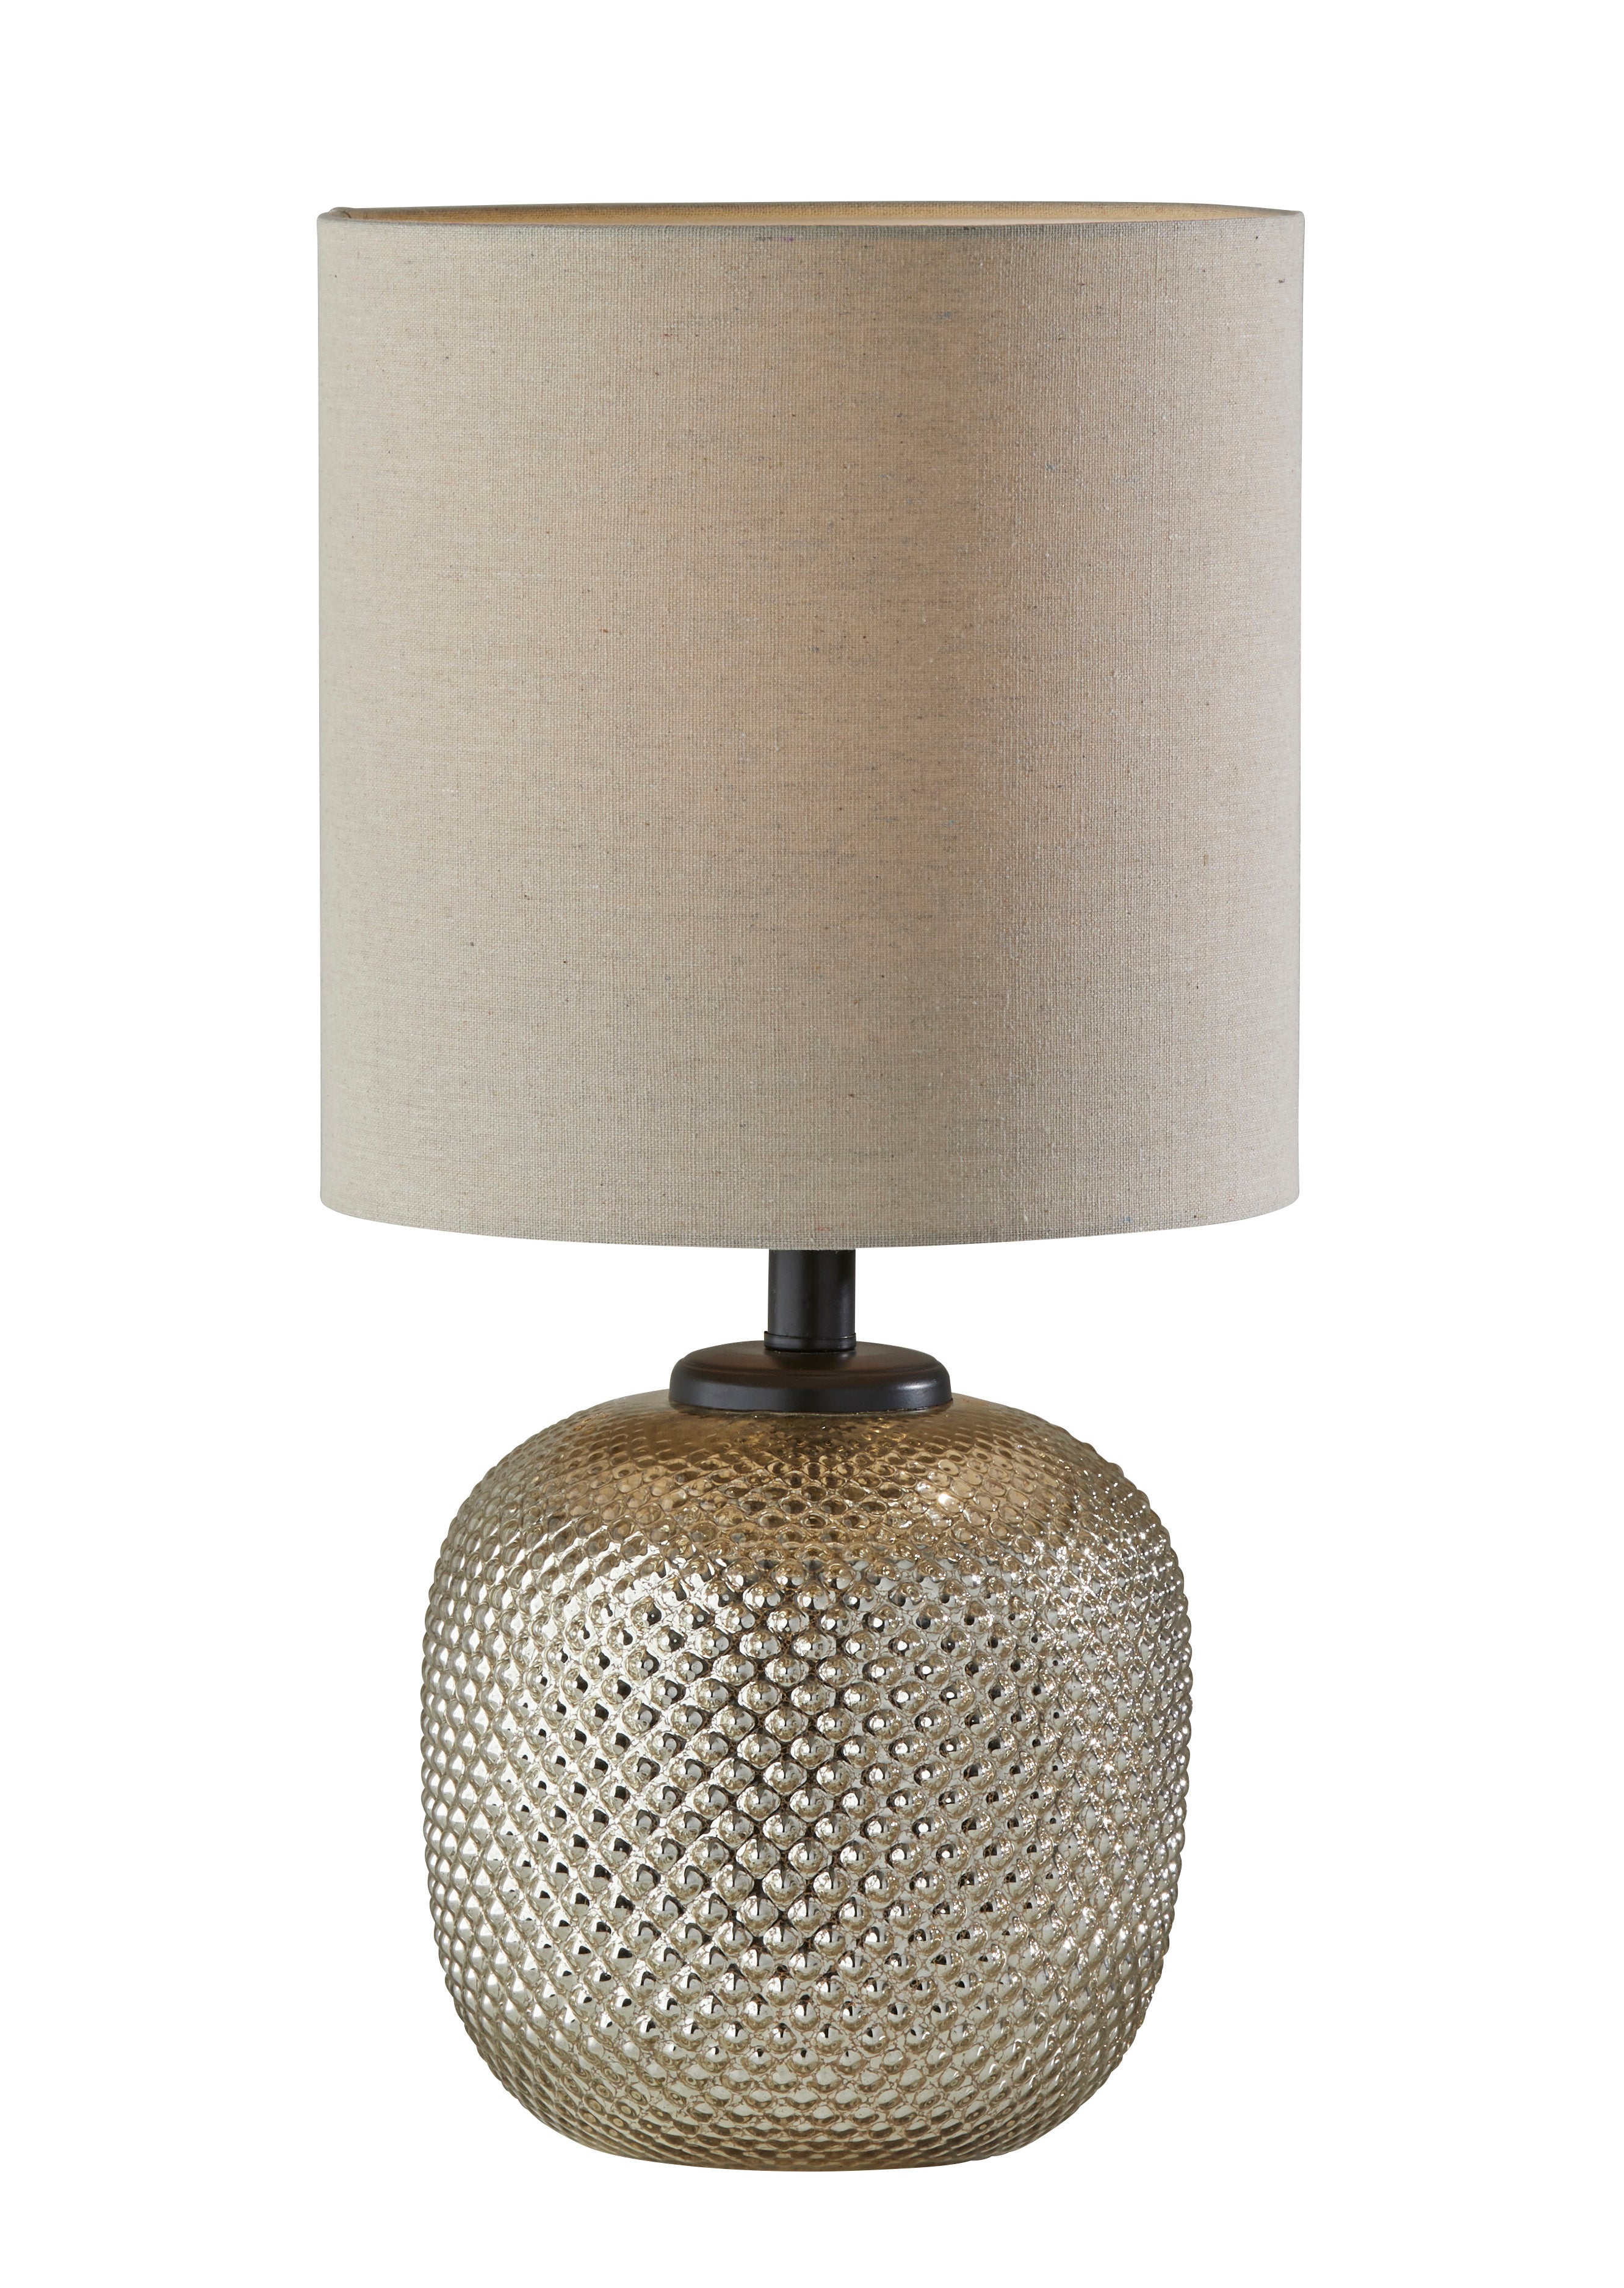 VIVIAN Table lamp Bronze - 3576-26 | ADESSO